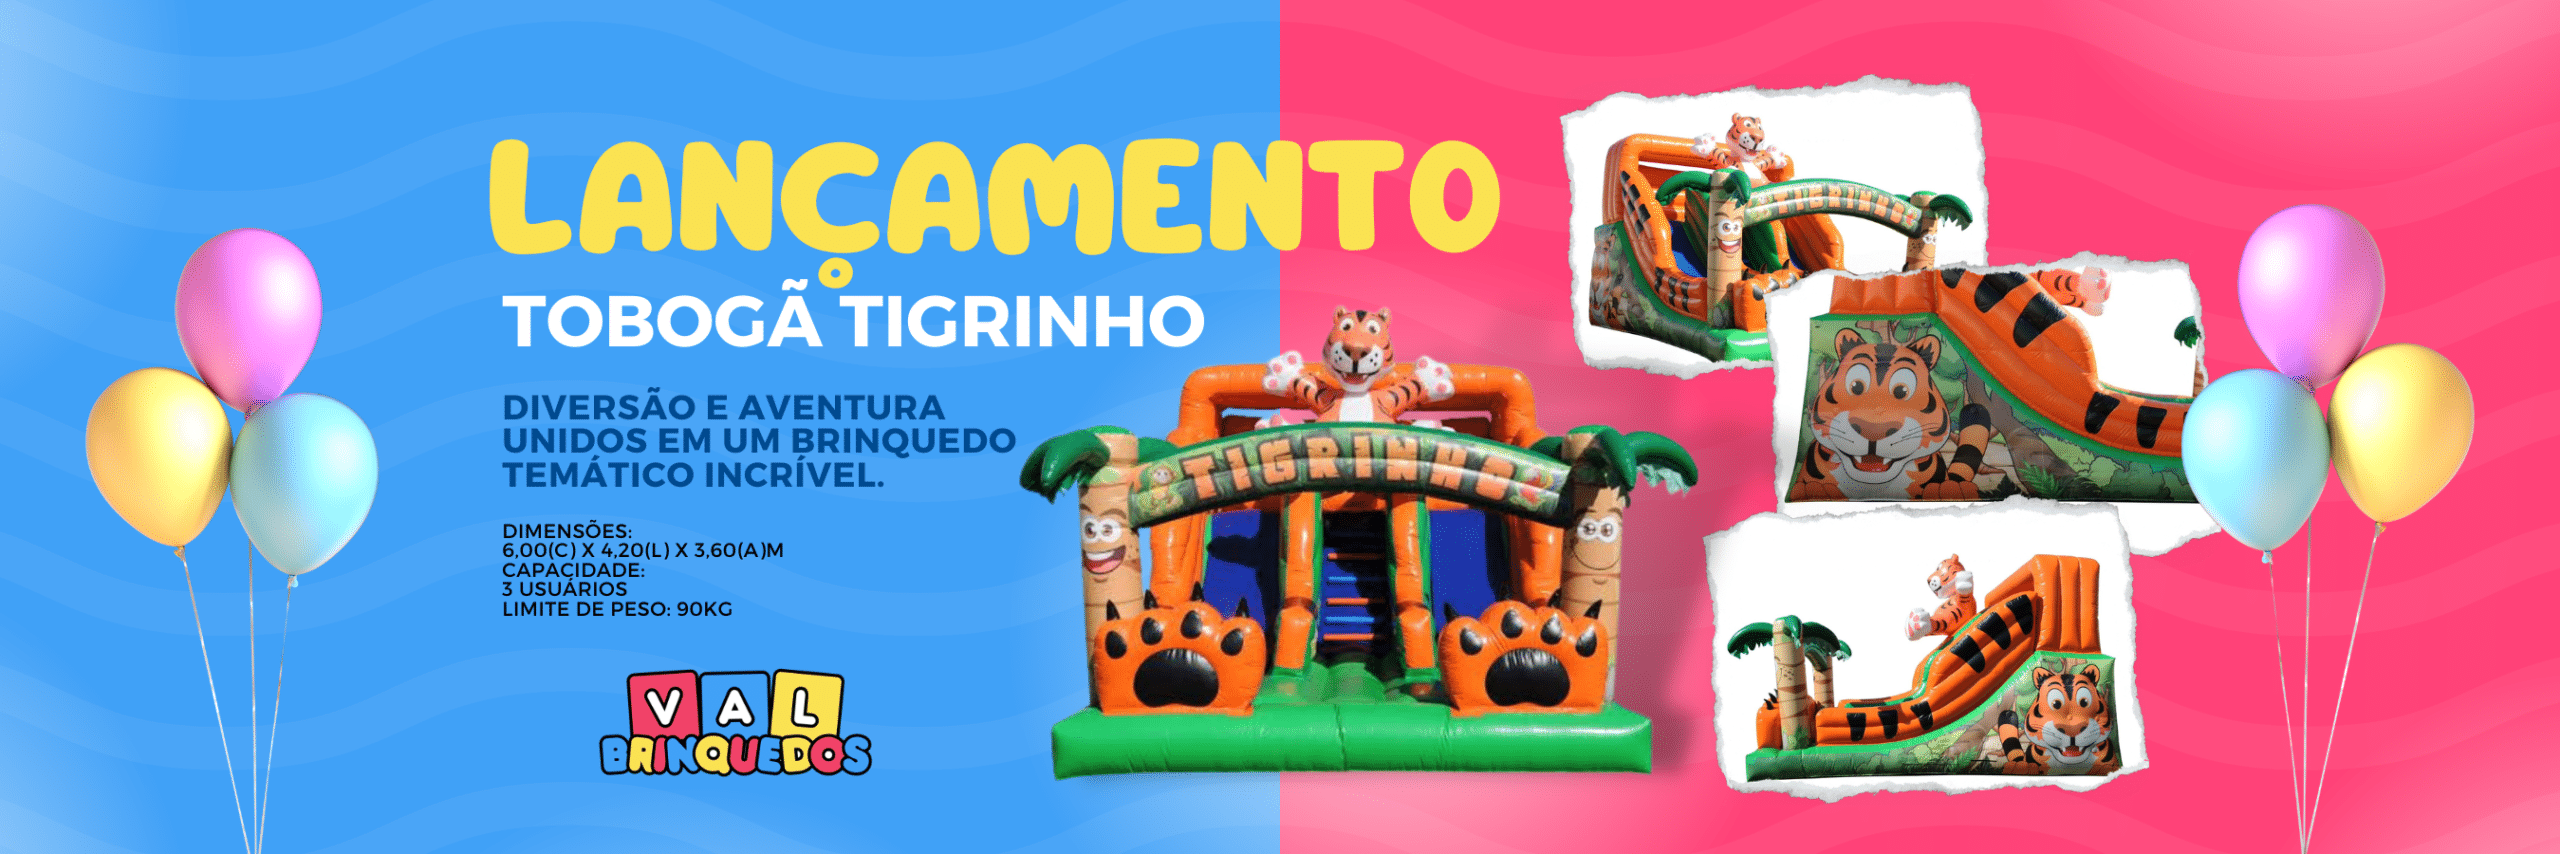 banner site novidade toboga tigrinho aluguel de brinquedos